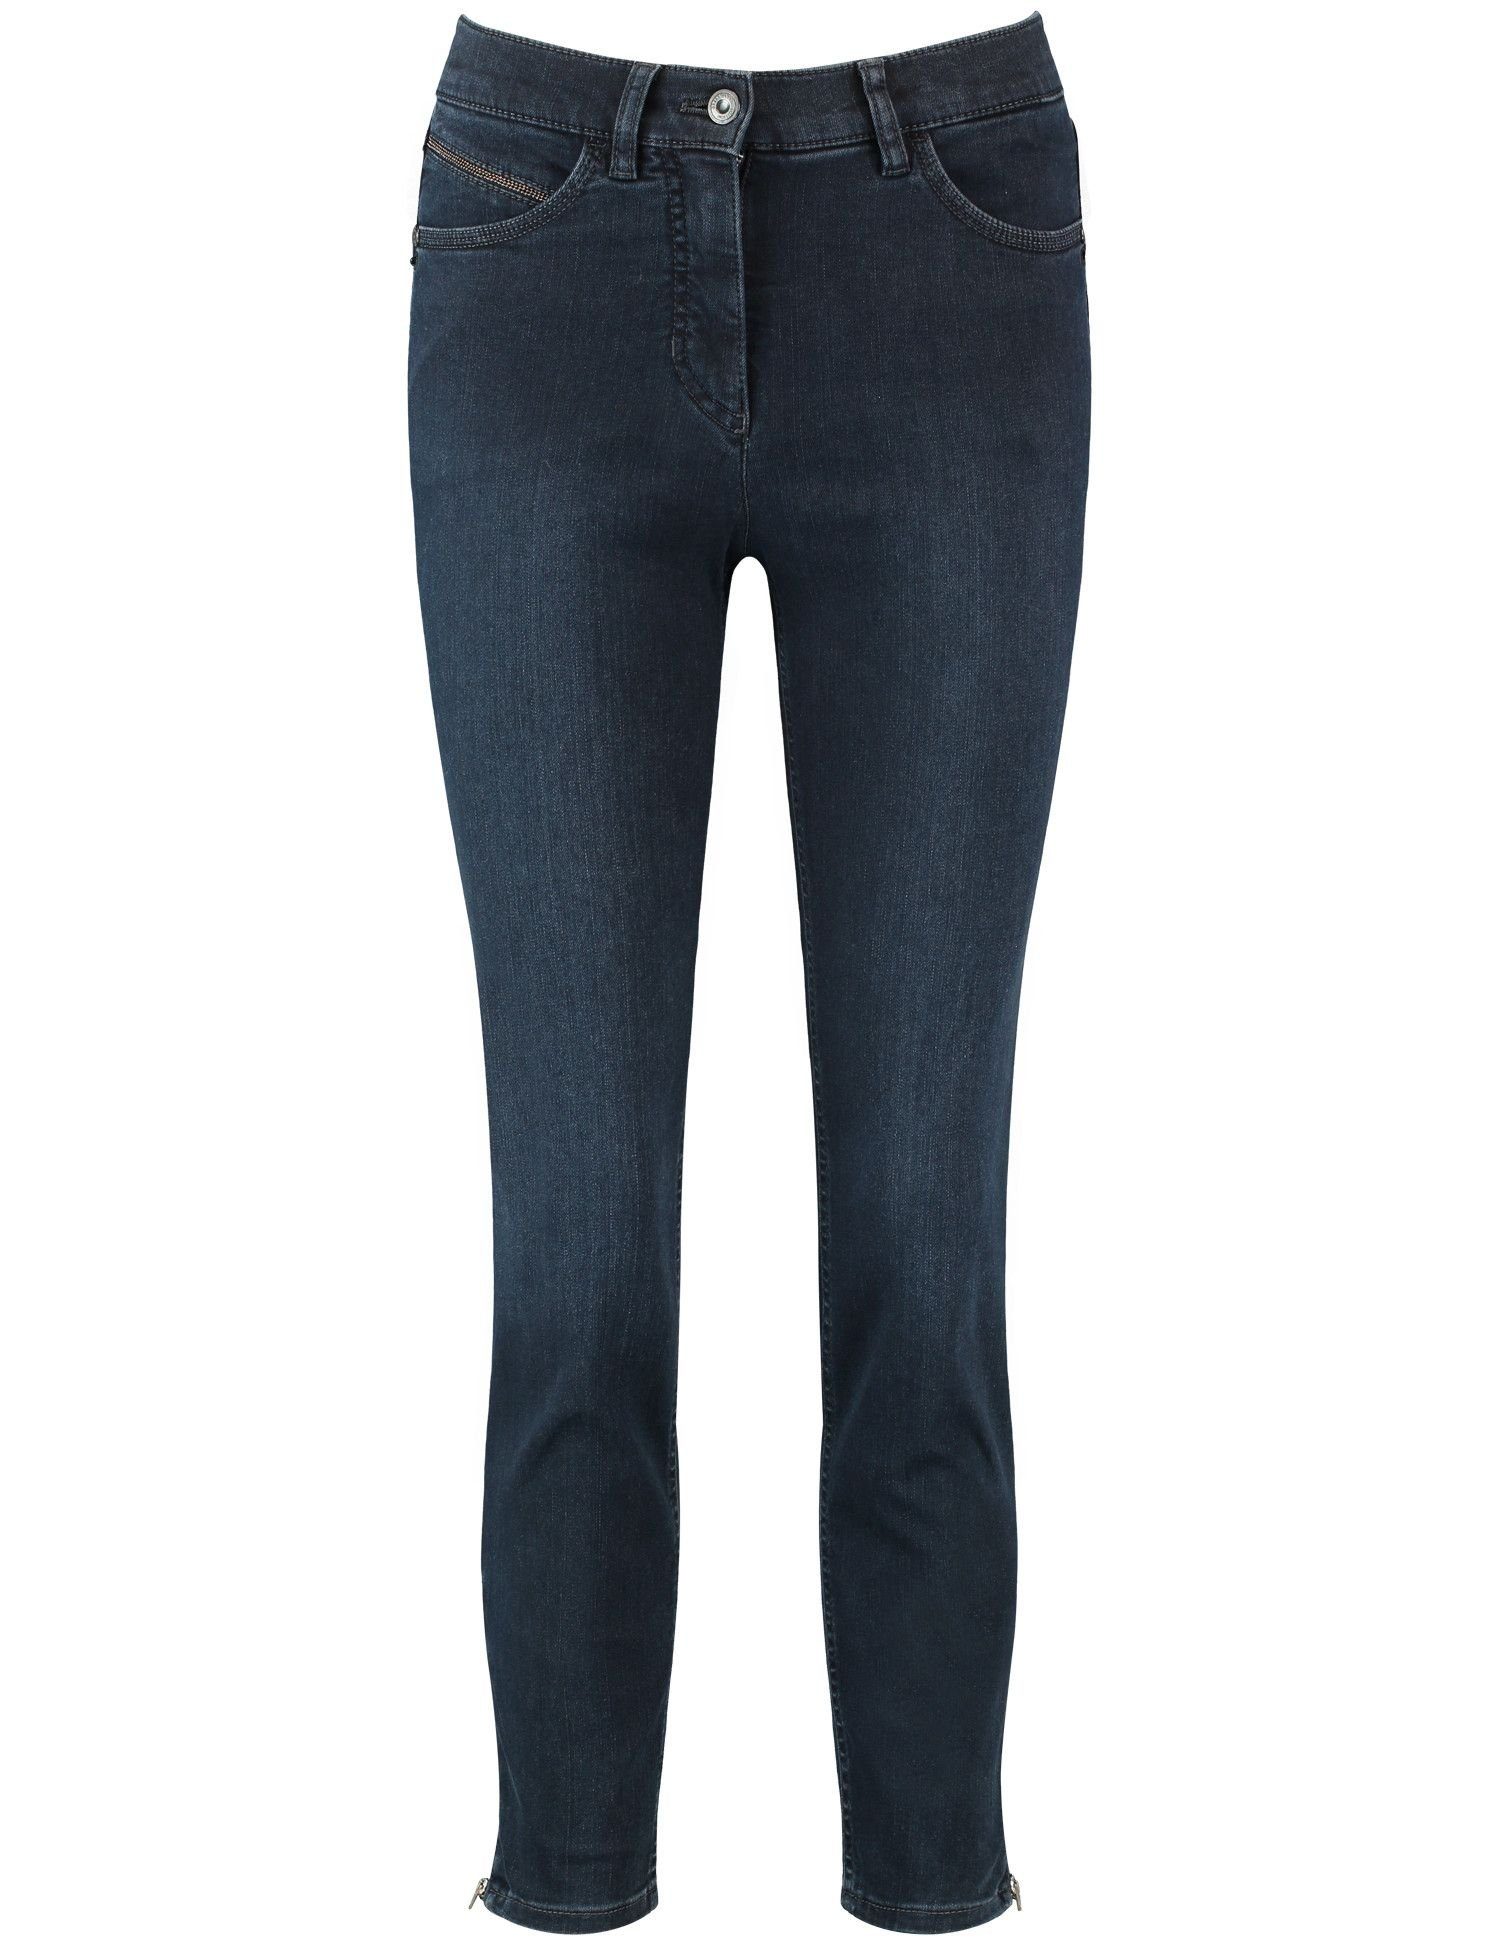 GERRY WEBER 5-Pocket-Jeans 863003 BLACK BLUE MIT USE